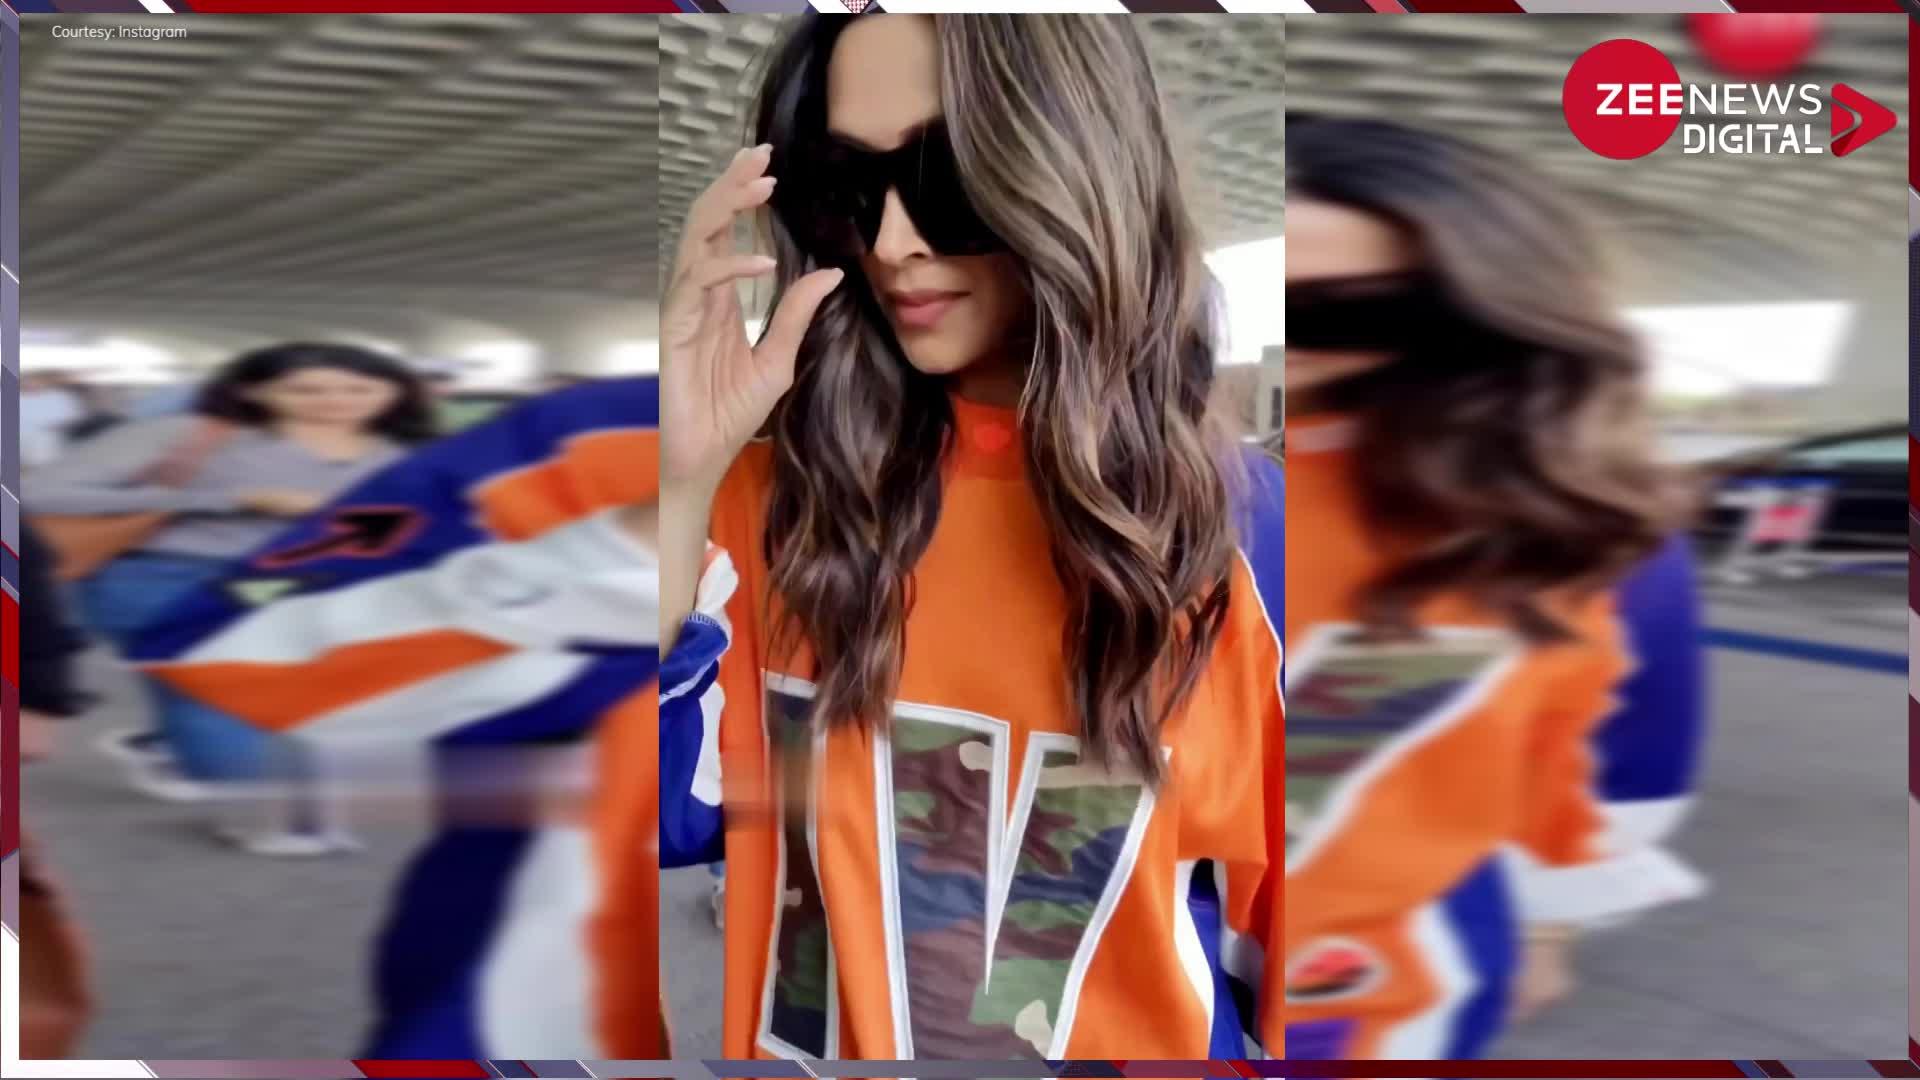 ऑरेंज ओवरसाइज टी-शर्ट में दीपिका पादुकोण (Deepika Padukon) ने एयरपोर्ट पर बढ़ाई गर्मी, जिसे देख फैंस बोले ये तो बॉलीवुड की क्वीन है